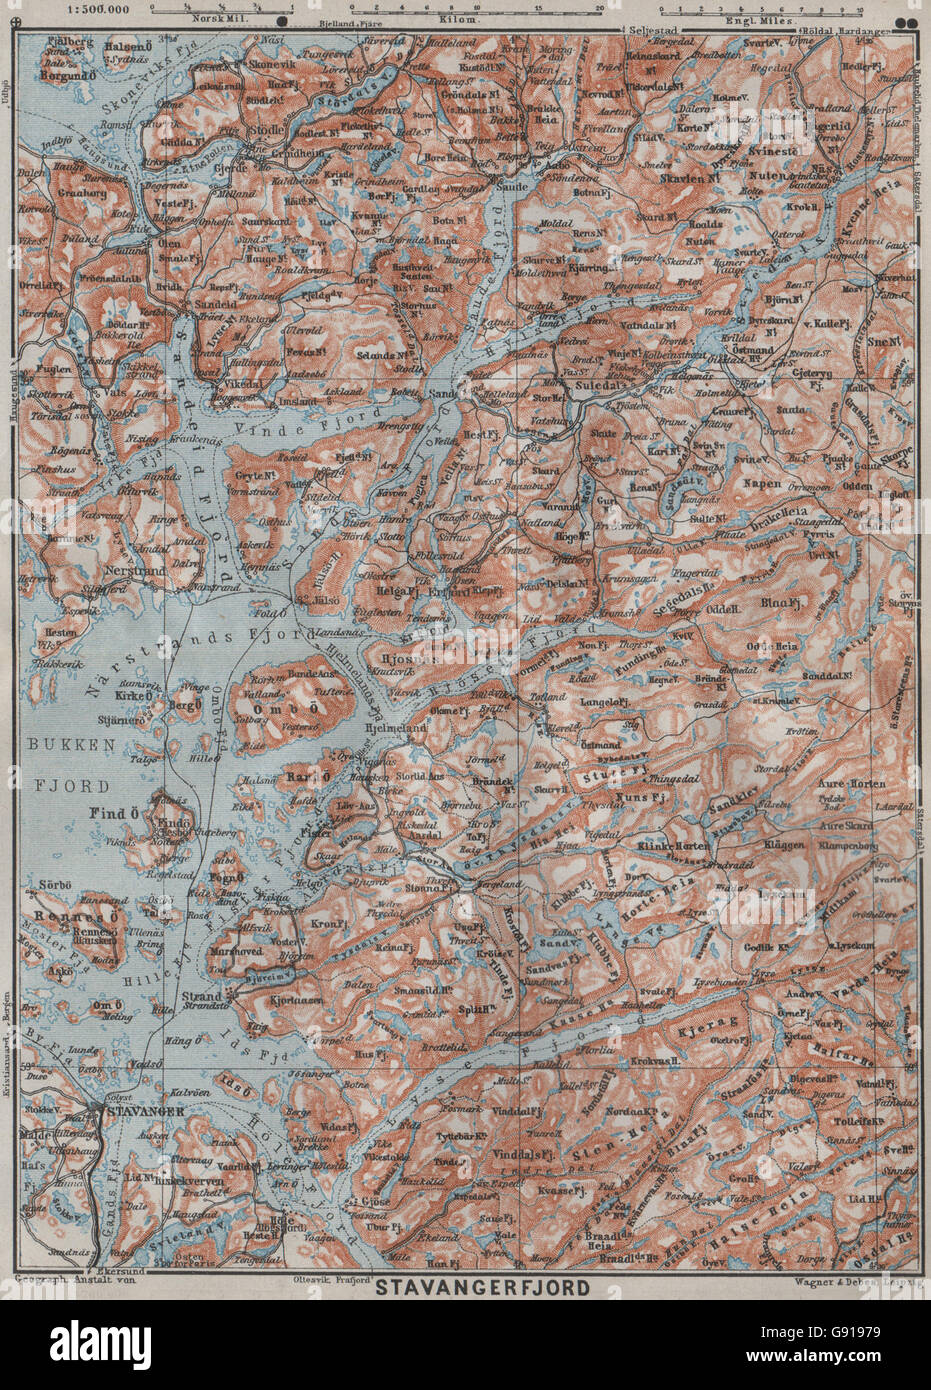 STAVANGER/BOKNA FJORD topo-map. Nedstrand Tau Sauda Etne. Norway kart, 1909  Stock Photo - Alamy